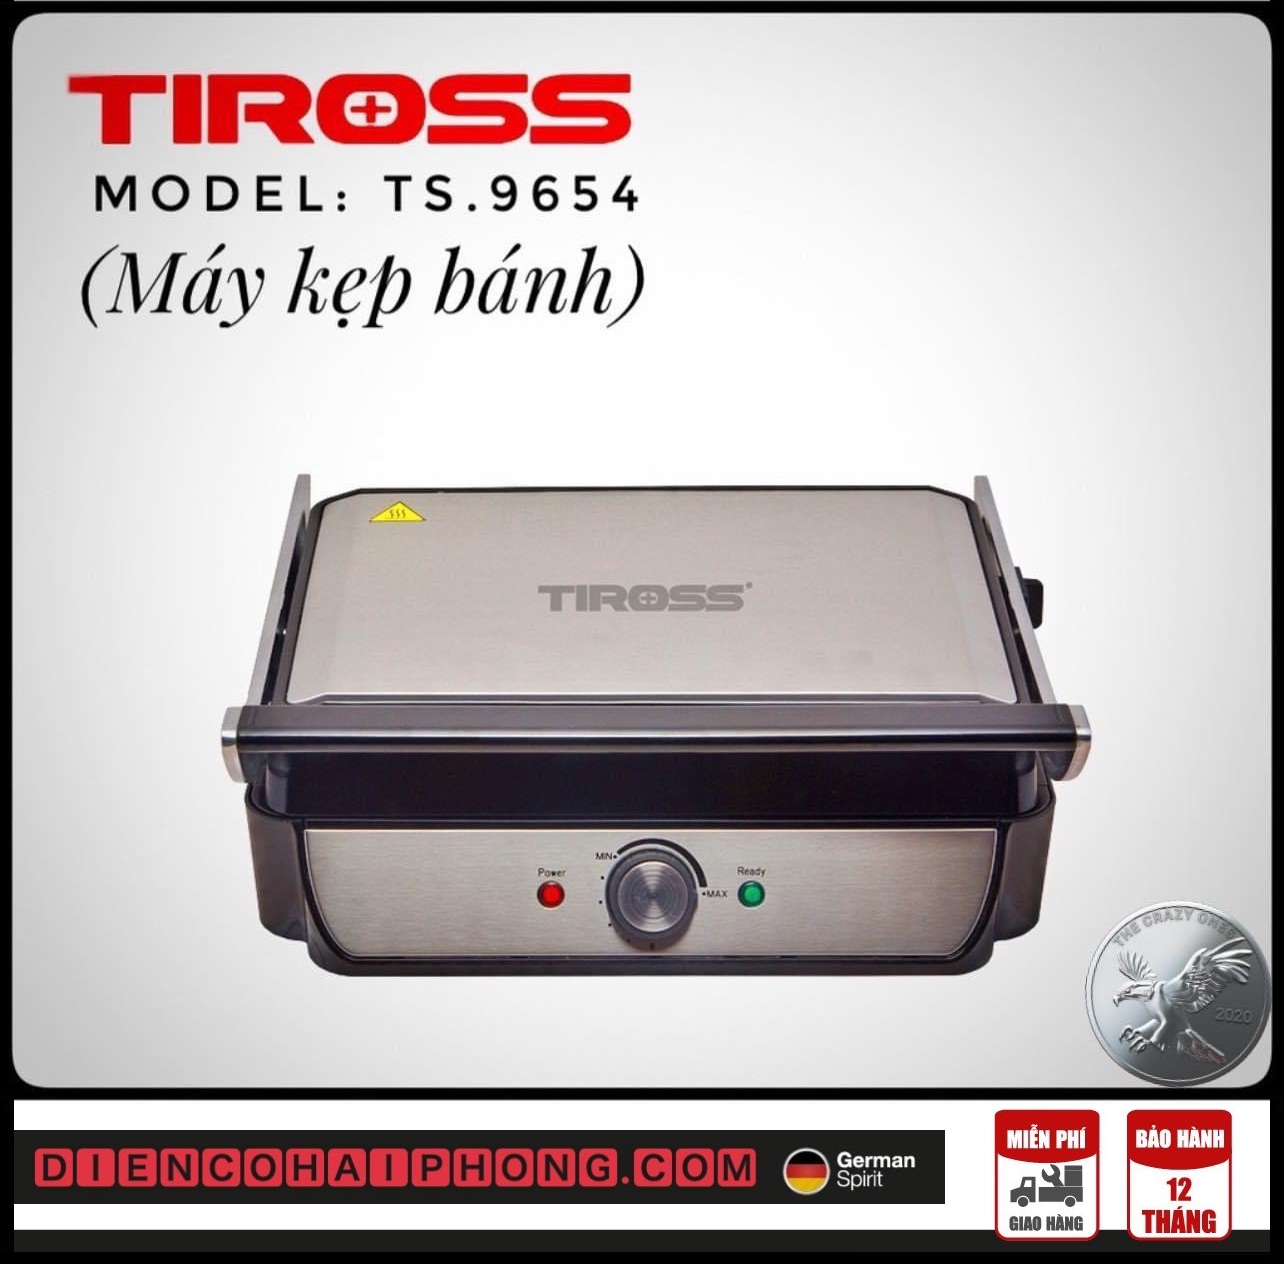 Kẹp Nướng Điện Tiross TS9654